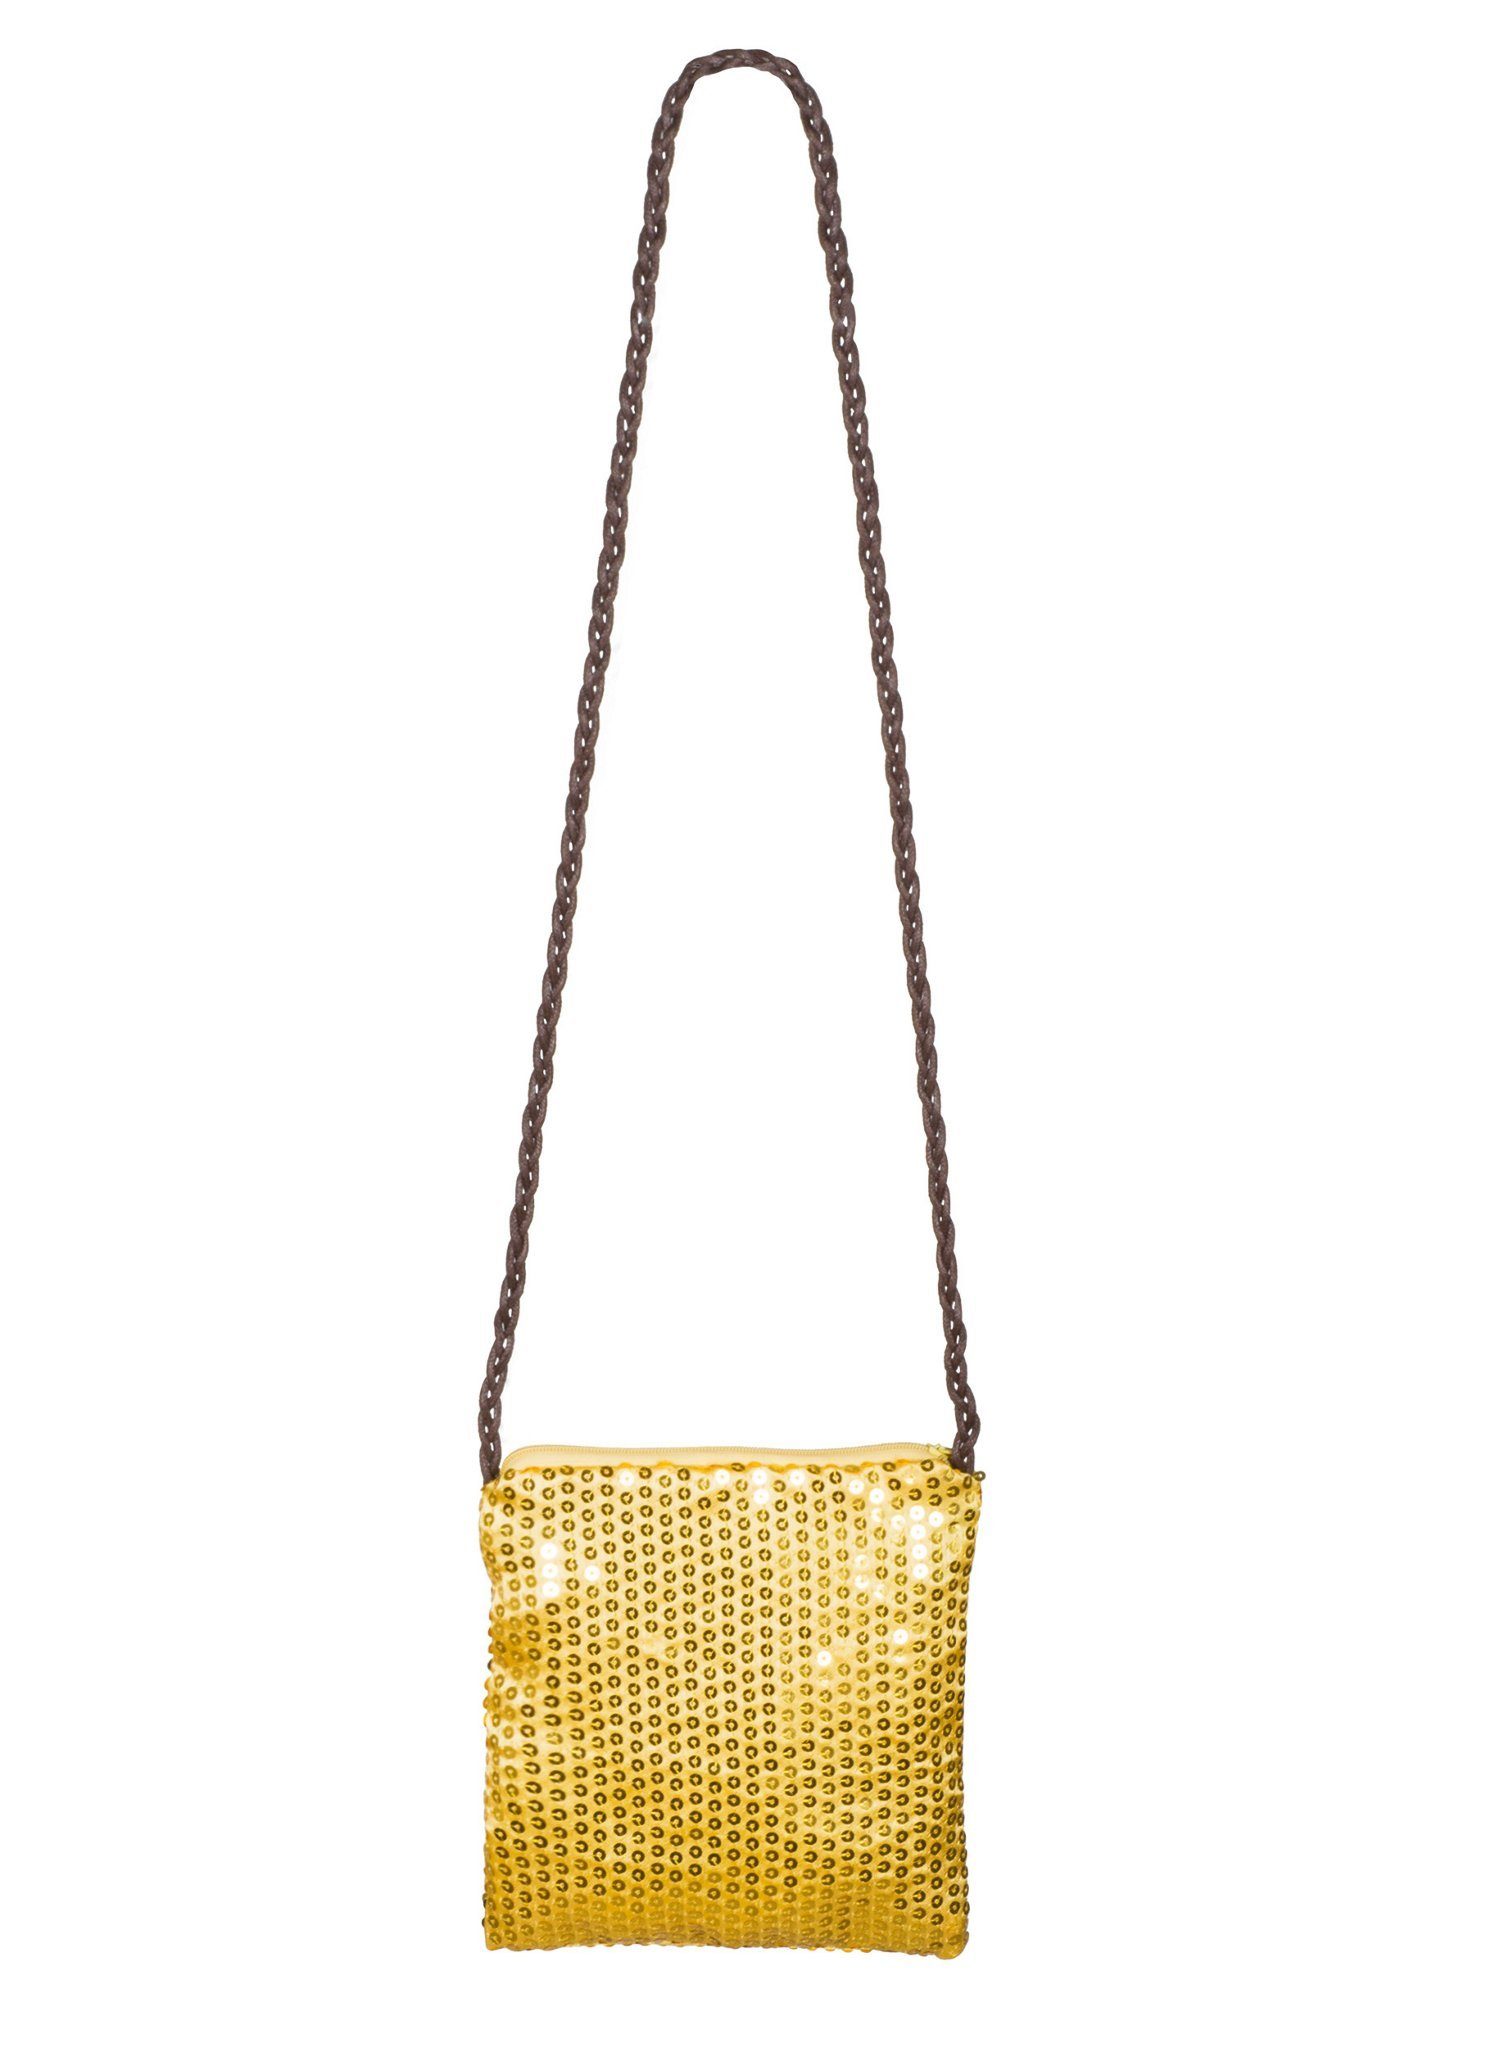 Boland Handtasche Pailletten Tasche gold, Glitzer-Umhängetasche für glamouröse Events